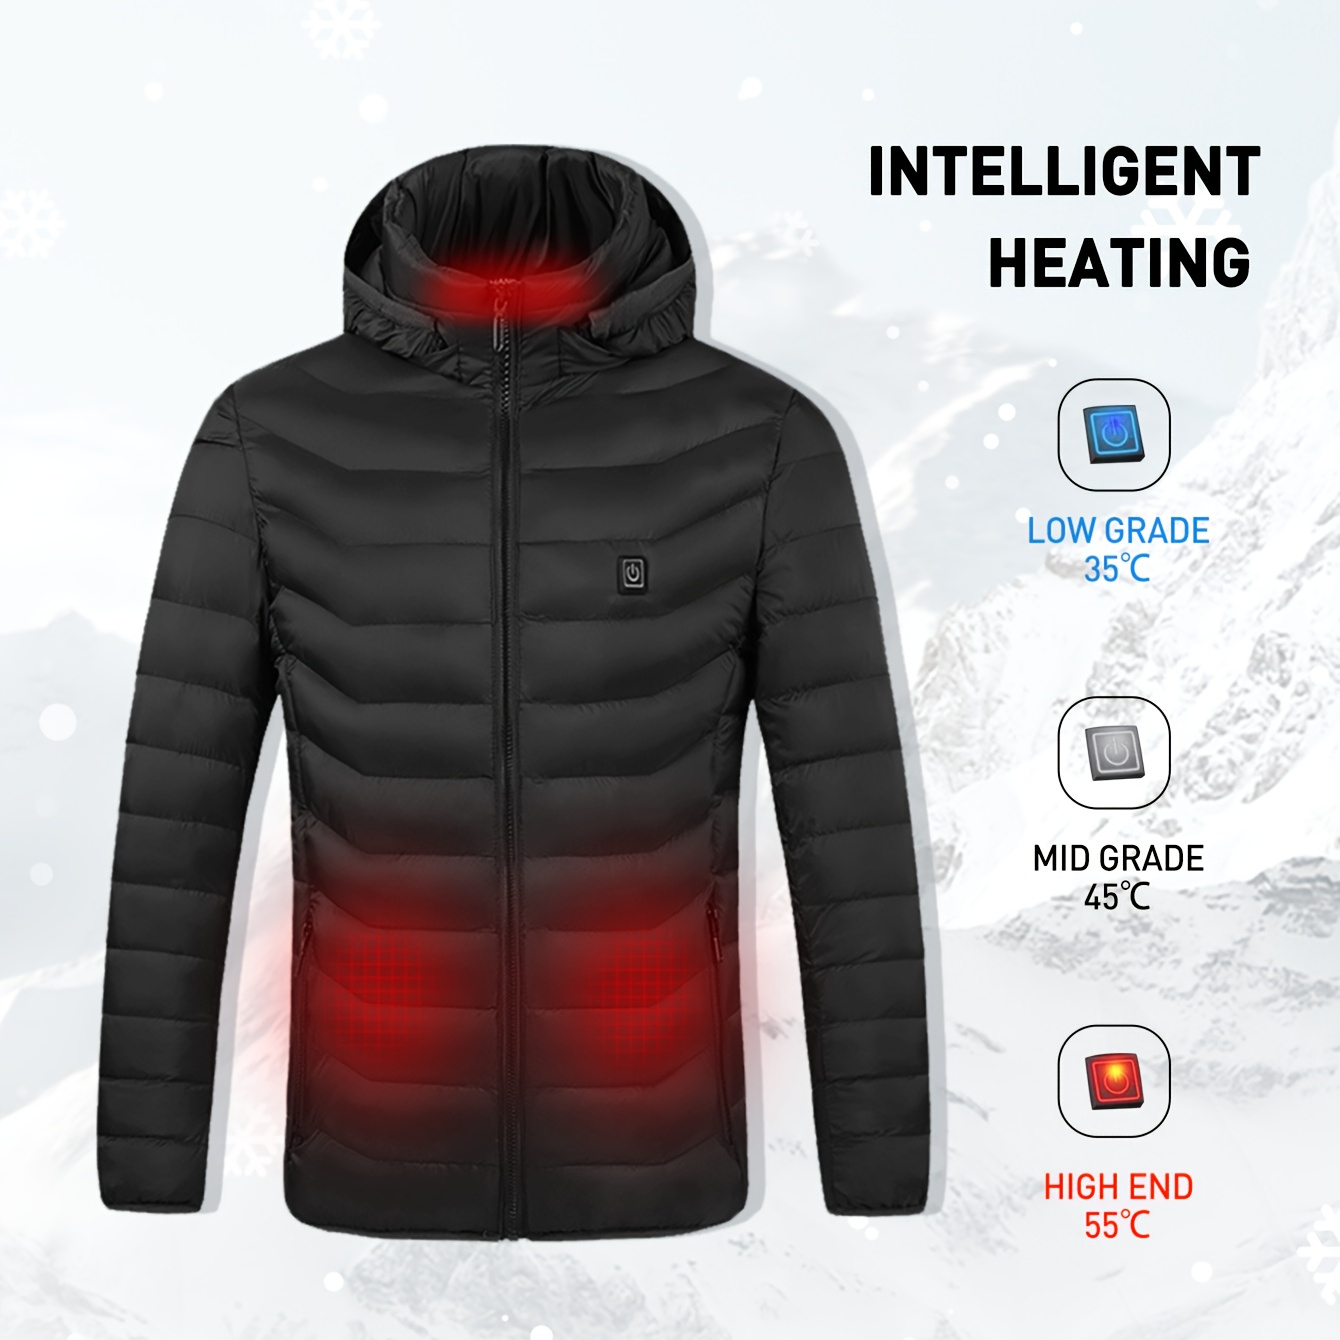 Waterproof Long Sleeves Heating Jacket, Windproof With Zipper Pocket  Outdoor Ski Jacket, Women's Activewear